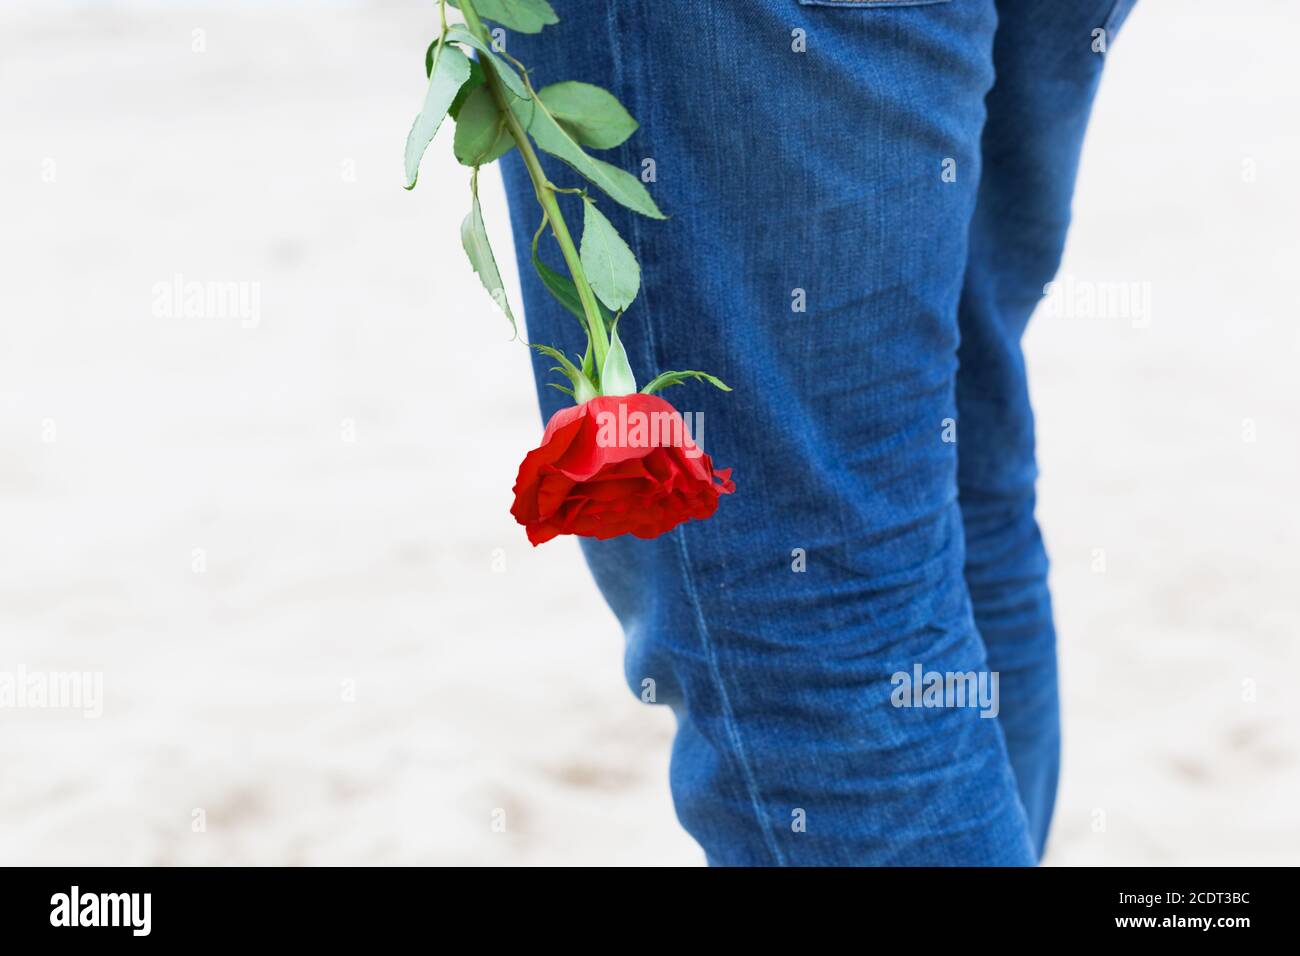 Mann mit einer Rose hinter seinem Rücken wartet auf Liebe. Romantisches Date am Strand Stockfoto